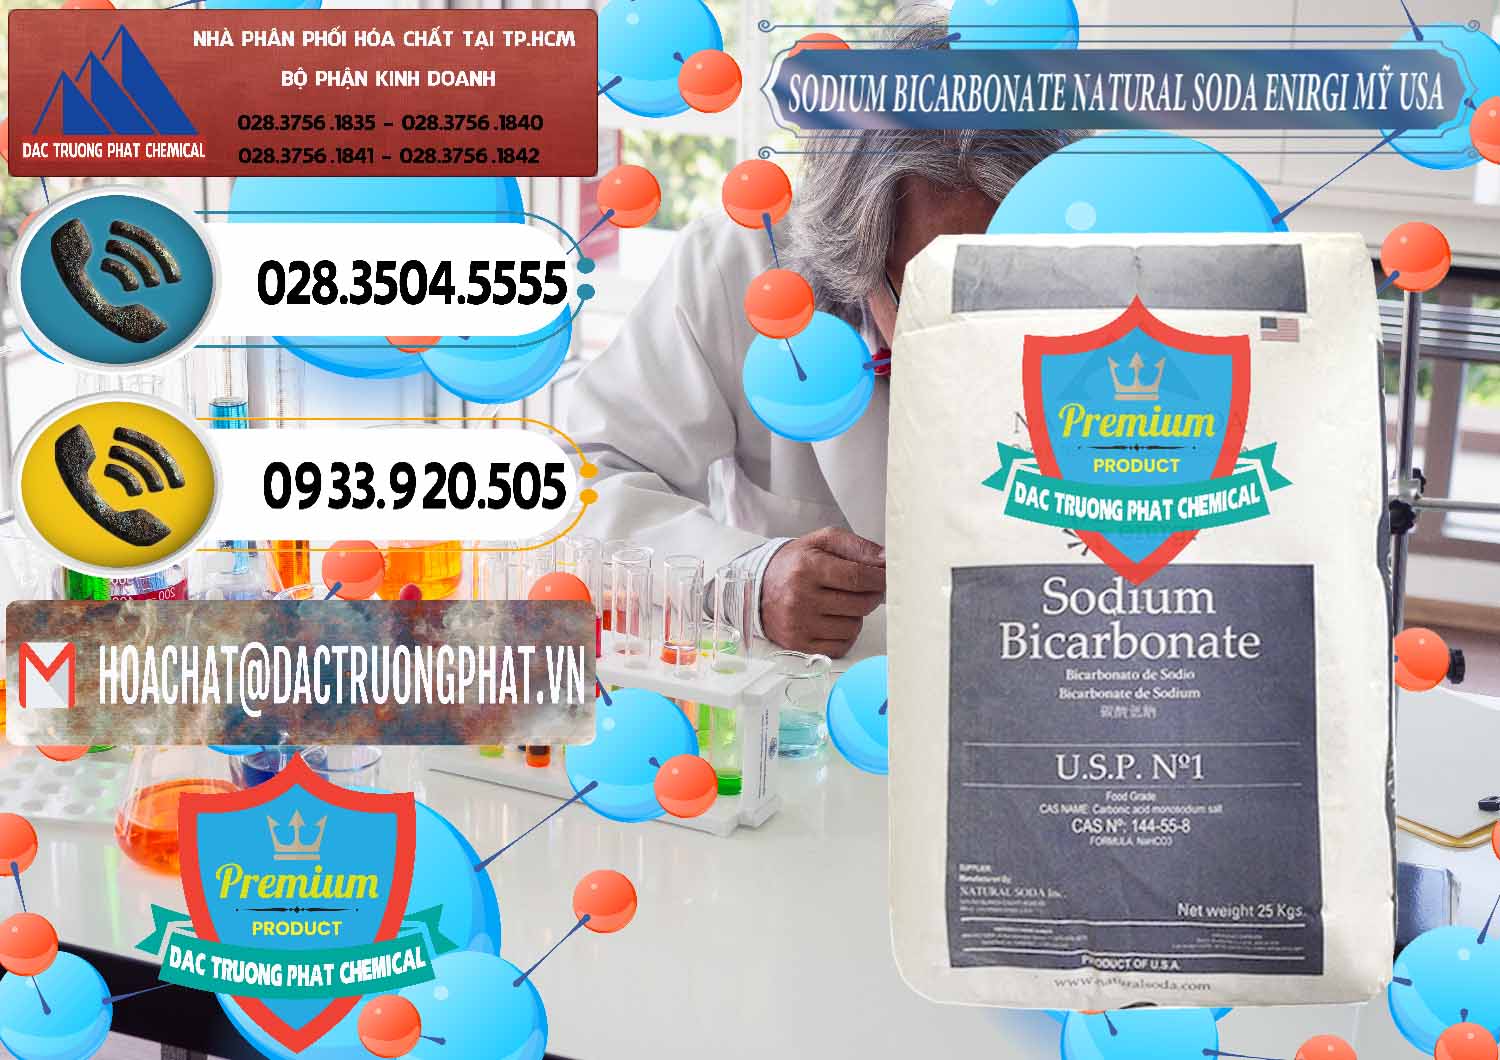 Công ty chuyên bán & phân phối Sodium Bicarbonate – Bicar NaHCO3 Food Grade Natural Soda Enirgi Mỹ USA - 0257 - Đơn vị bán - phân phối hóa chất tại TP.HCM - hoachatdetnhuom.vn